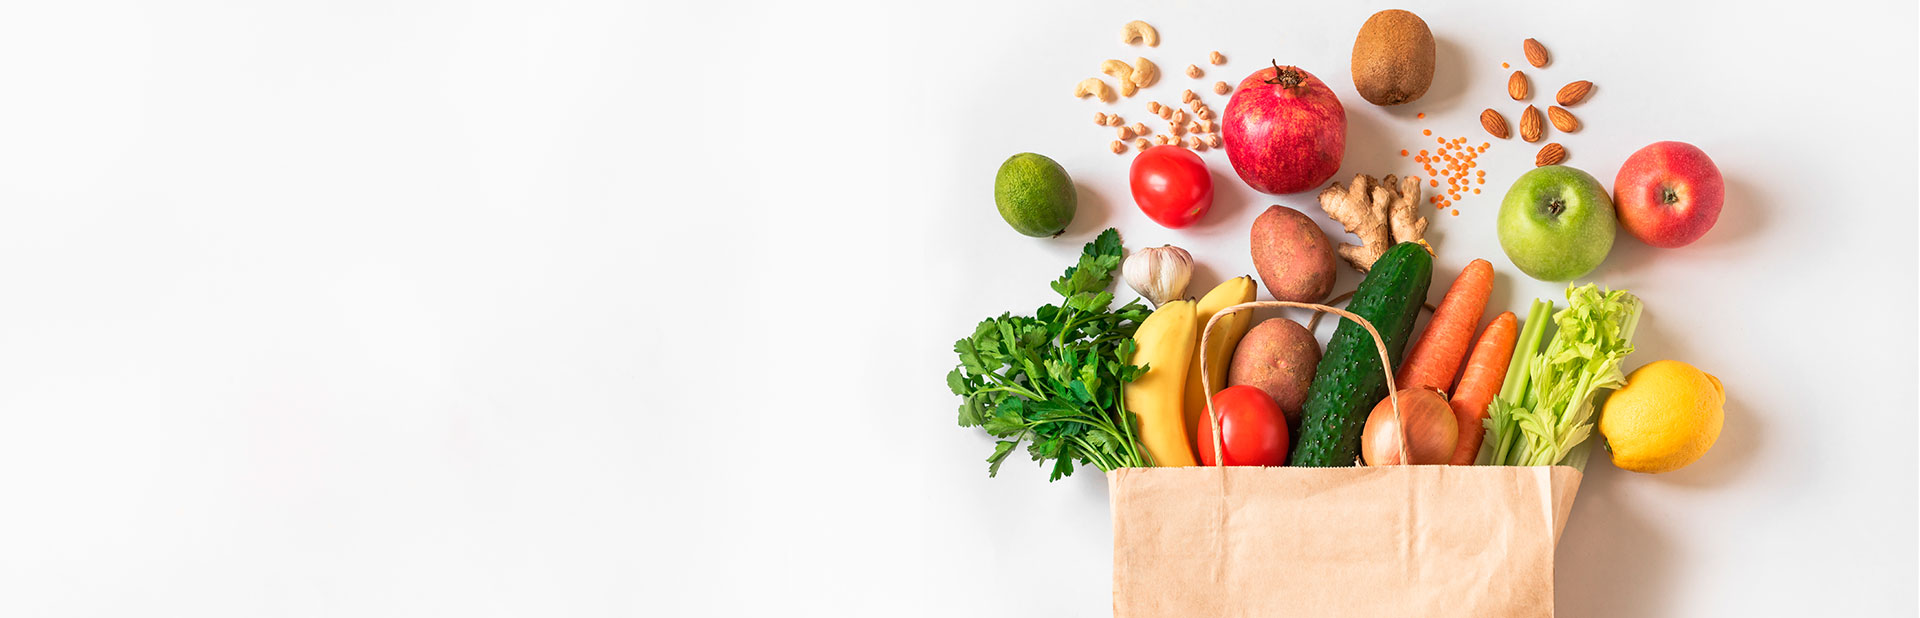 imagen bolsa compra con verduras